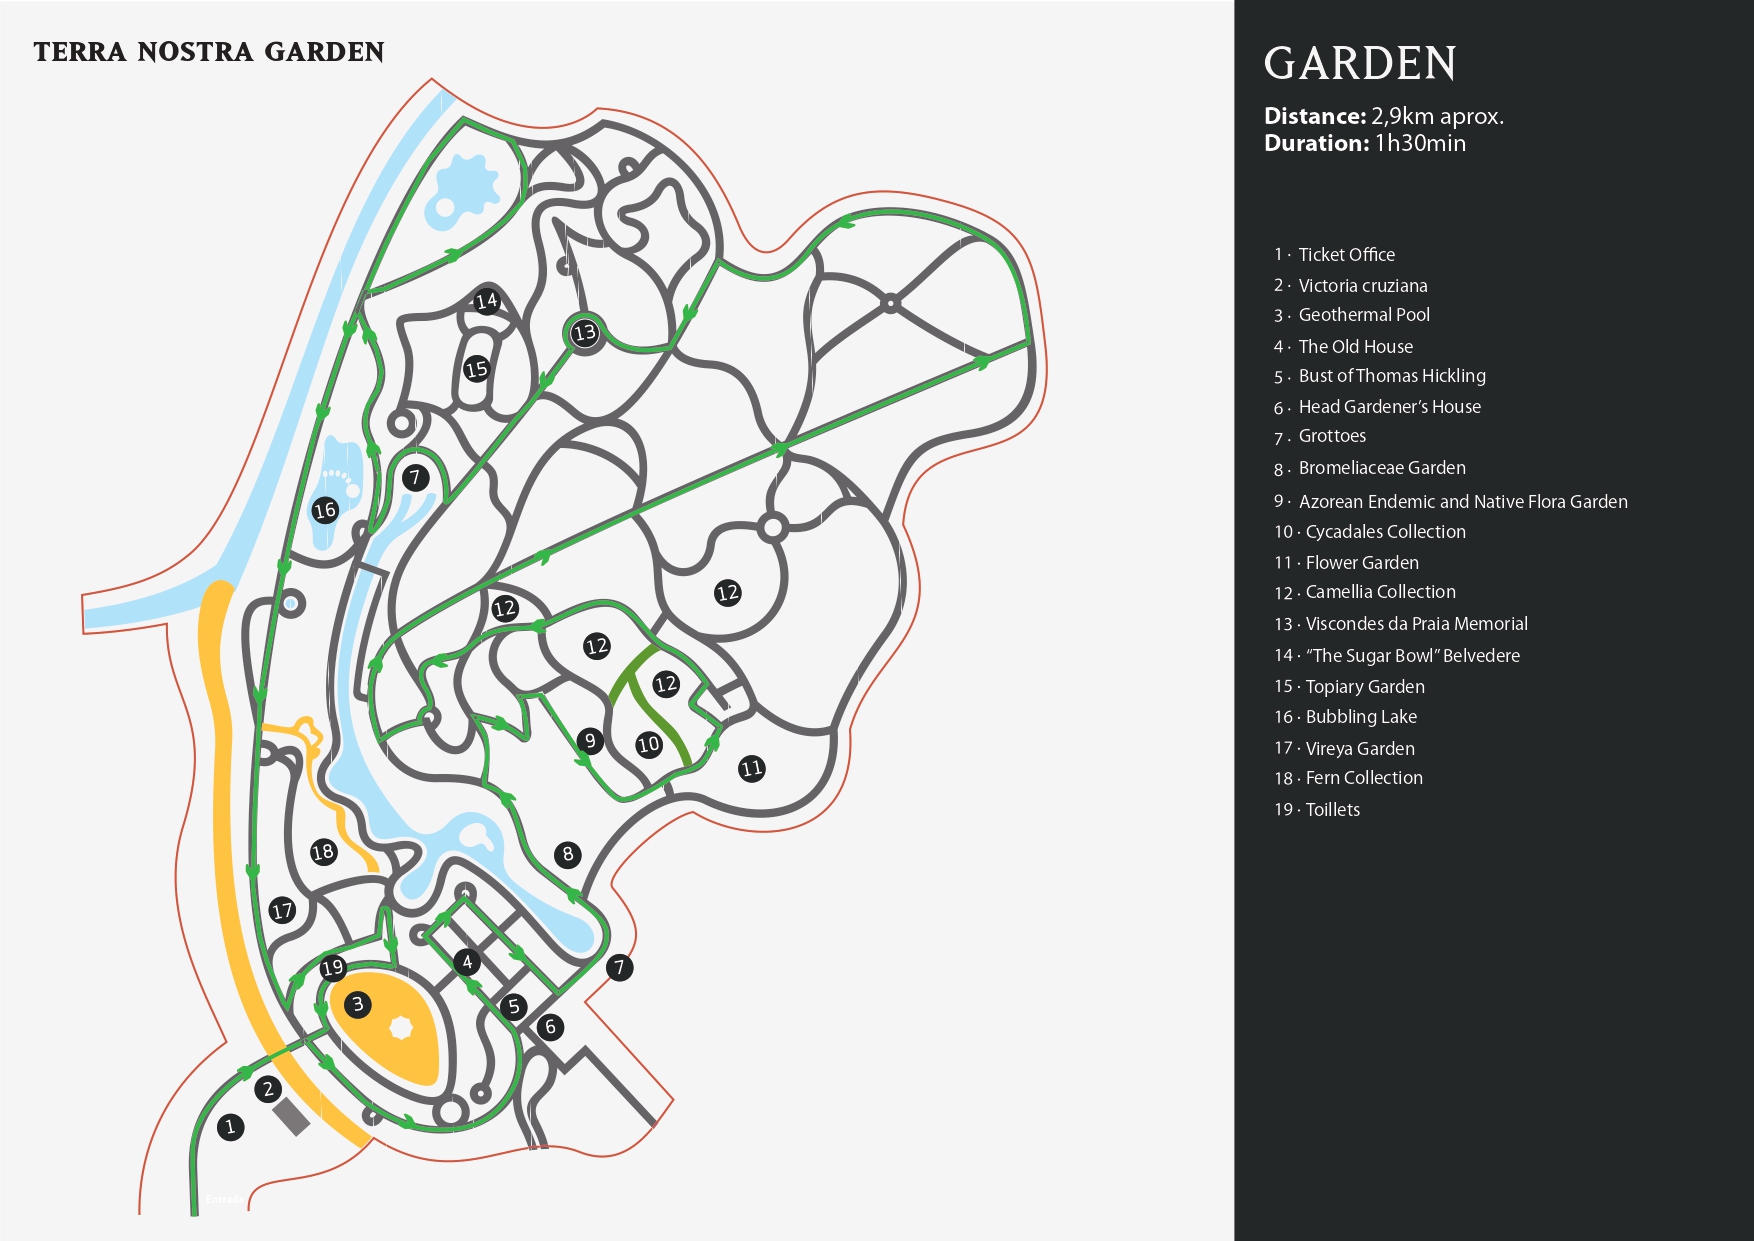 Mapa del Jardín Botánico Terra Nostra